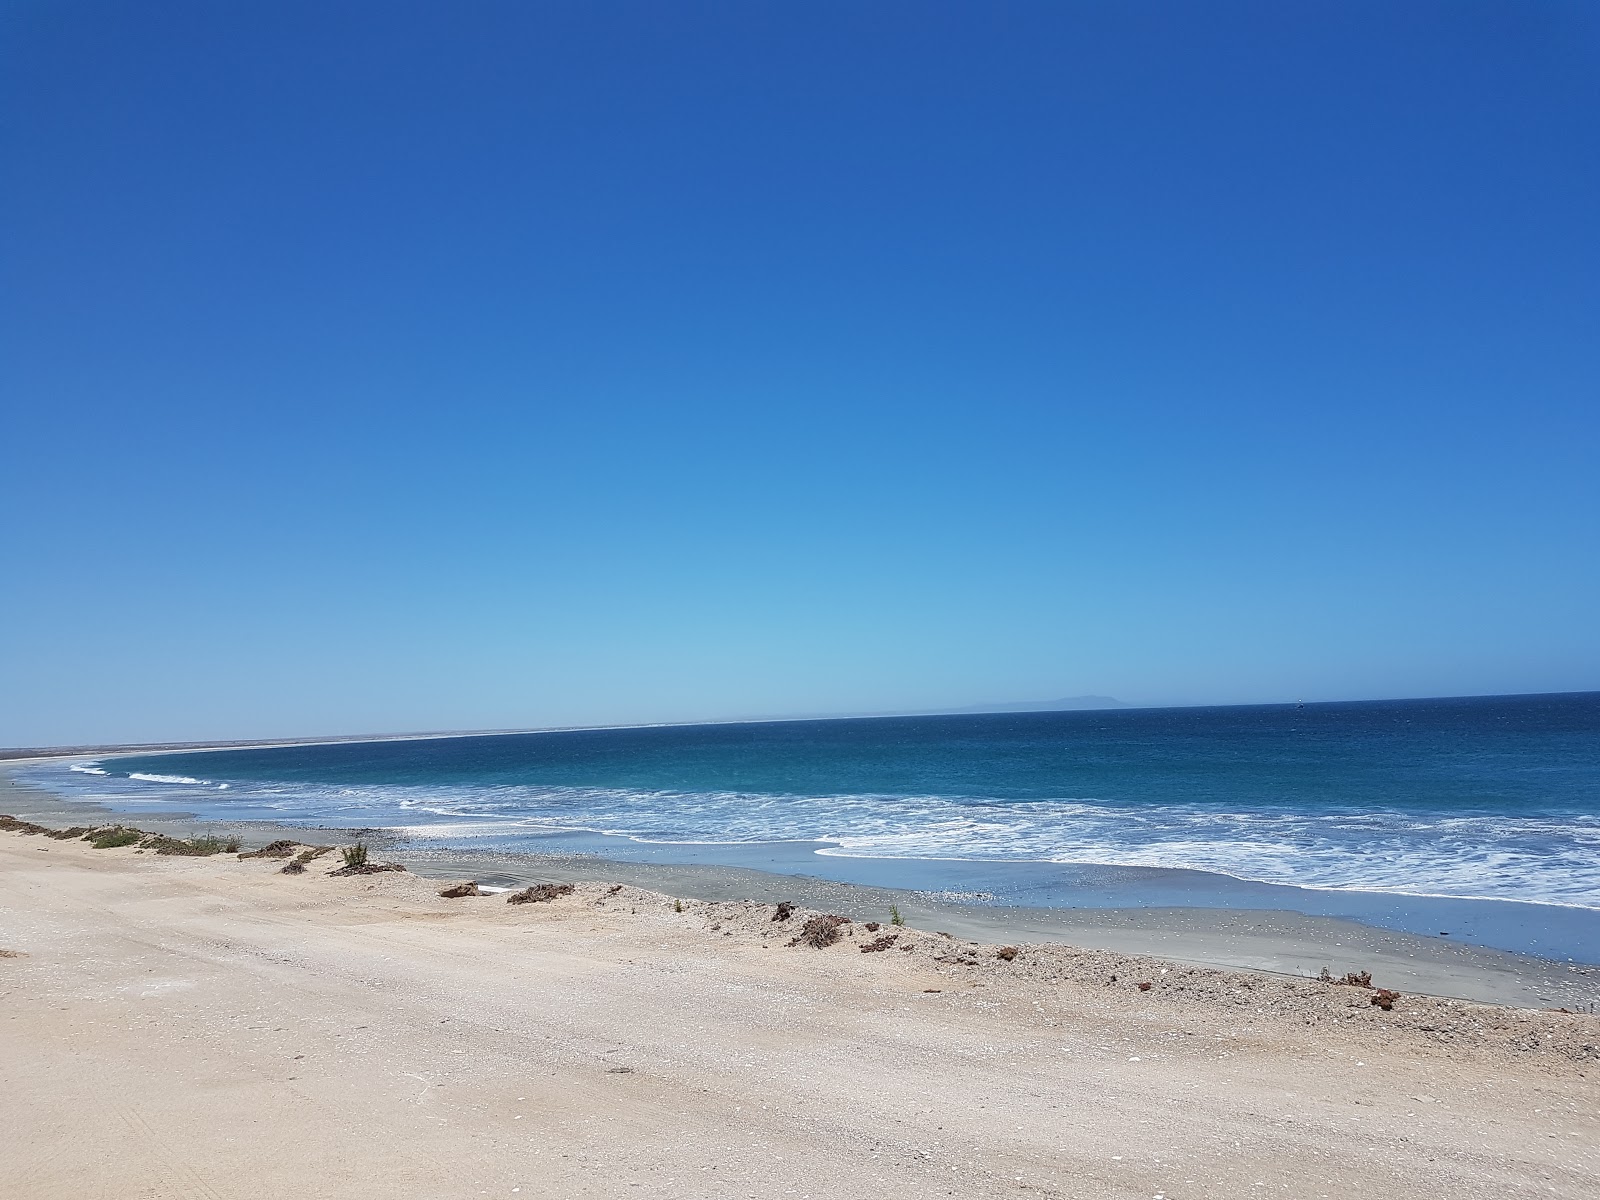 Bahia Asuncion Beach'in fotoğrafı kahverengi kum yüzey ile